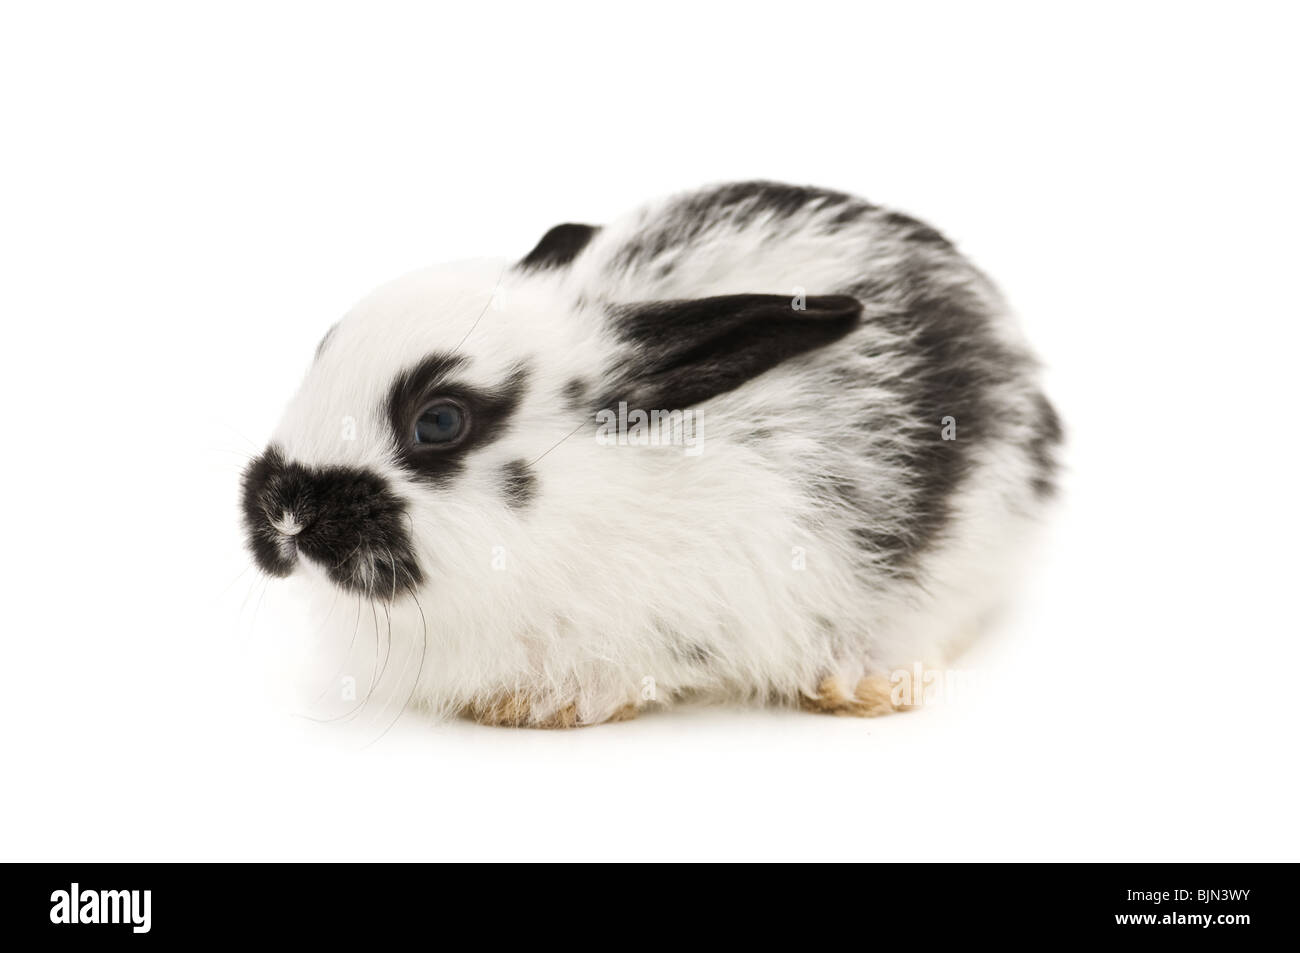 rabbit isolated on white background Stock Photo